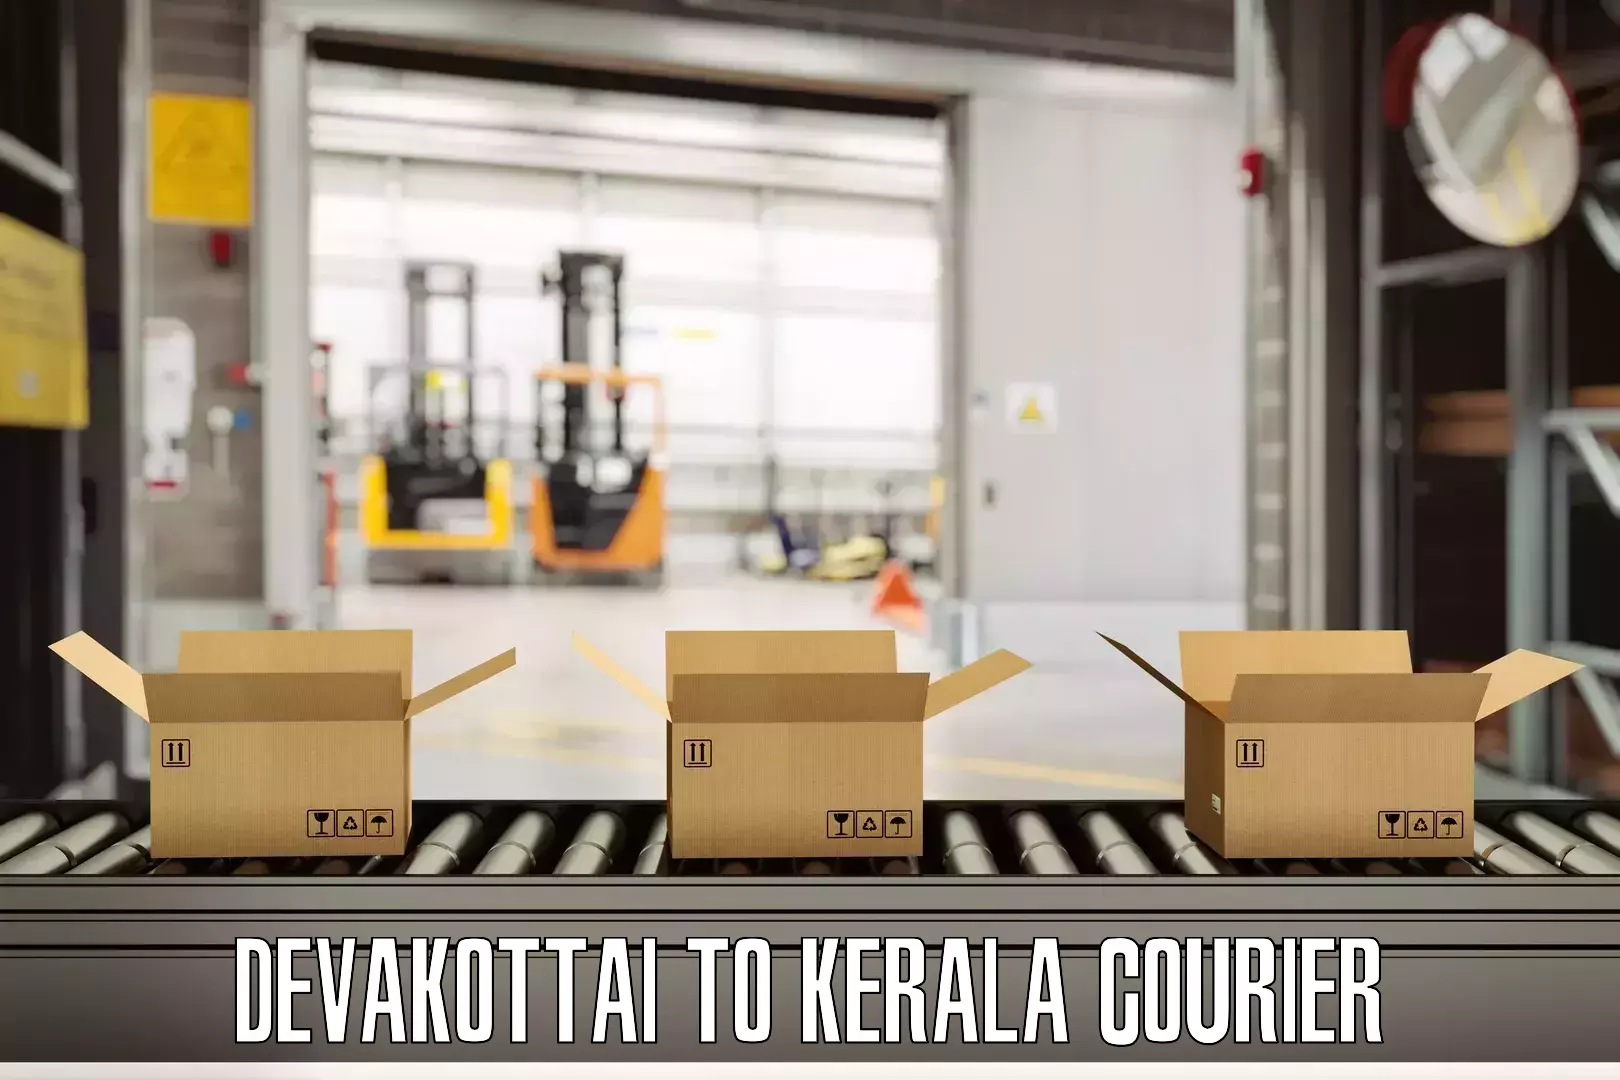 Baggage shipping calculator Devakottai to Mundakayam